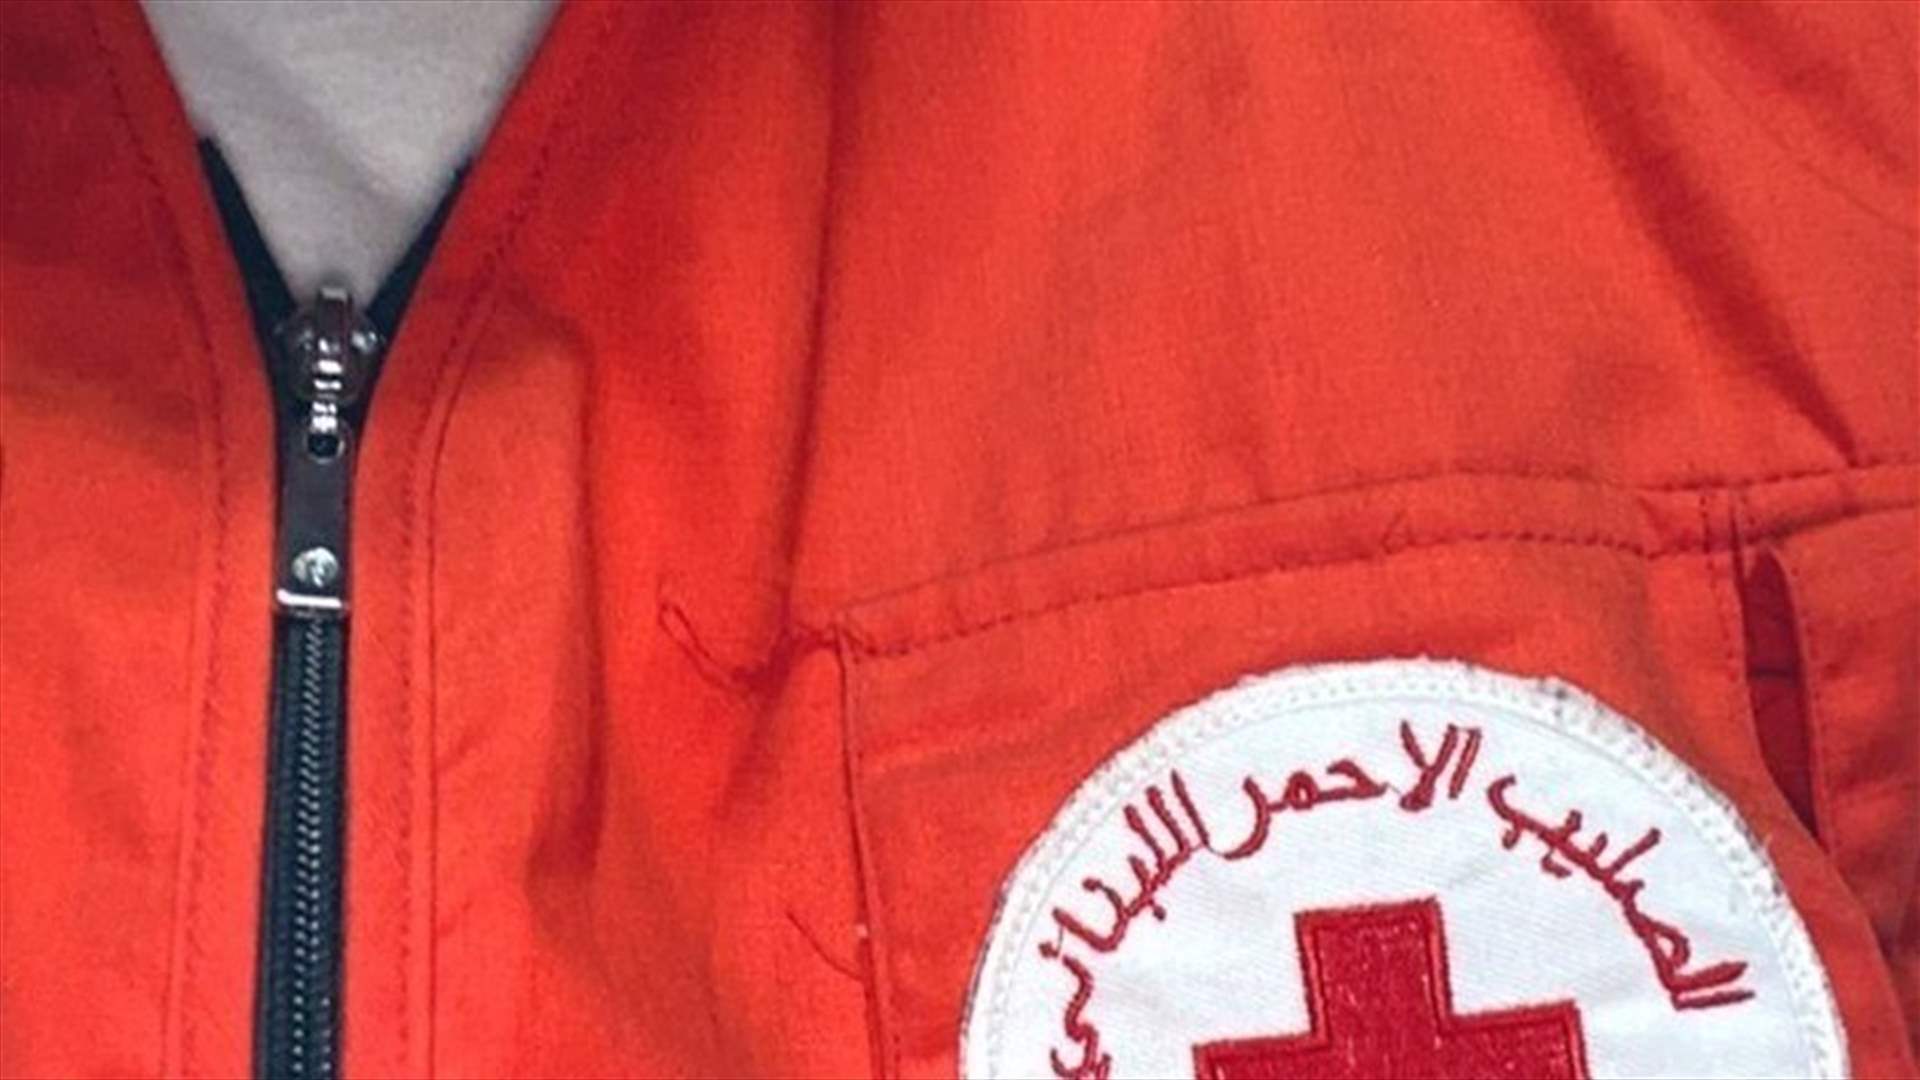 الصليب الأحمر: نقل جثمان شهيد و4 جرحى تم إستهدافهم بالقصف الإسرائيلي من خراج بلدة كفرحمام إلى مستشفى مرجعيون الحكومي